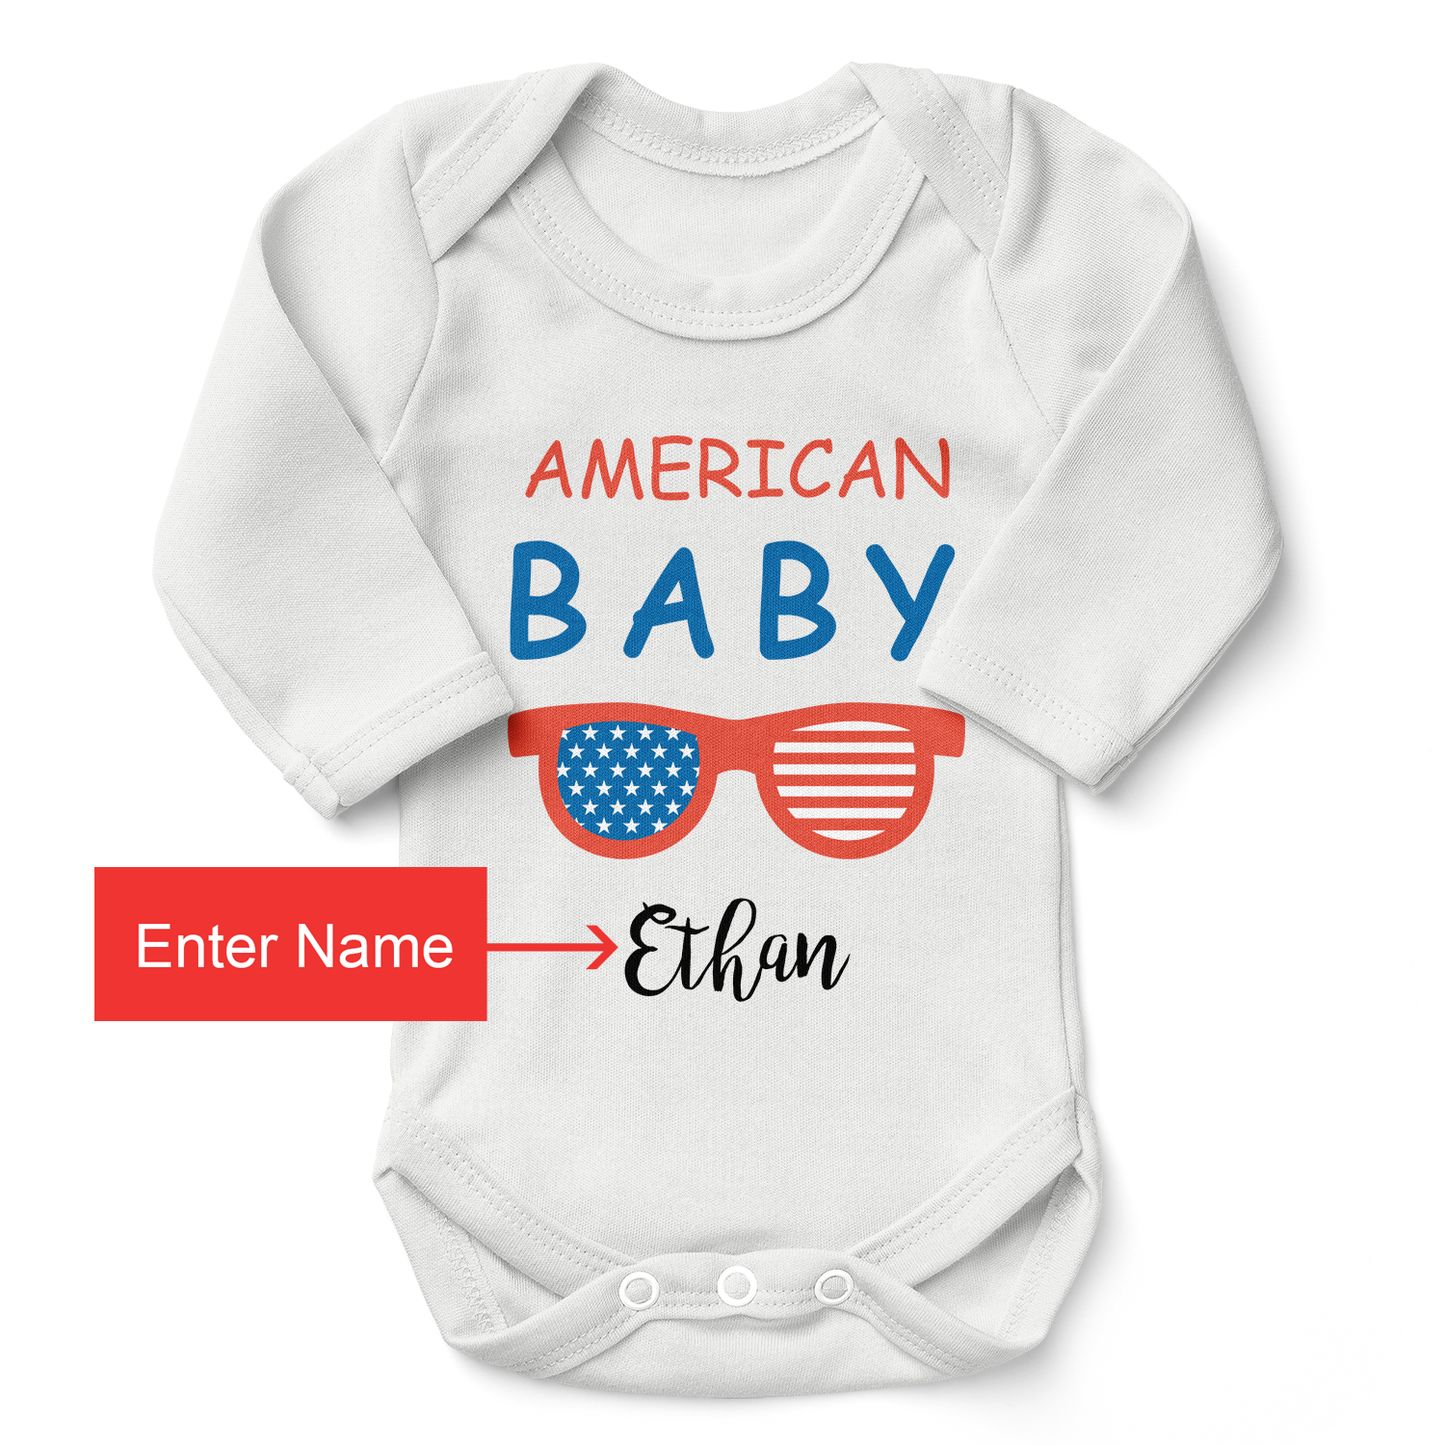 Zeronto Baby Boy Gift Basket - American Baby